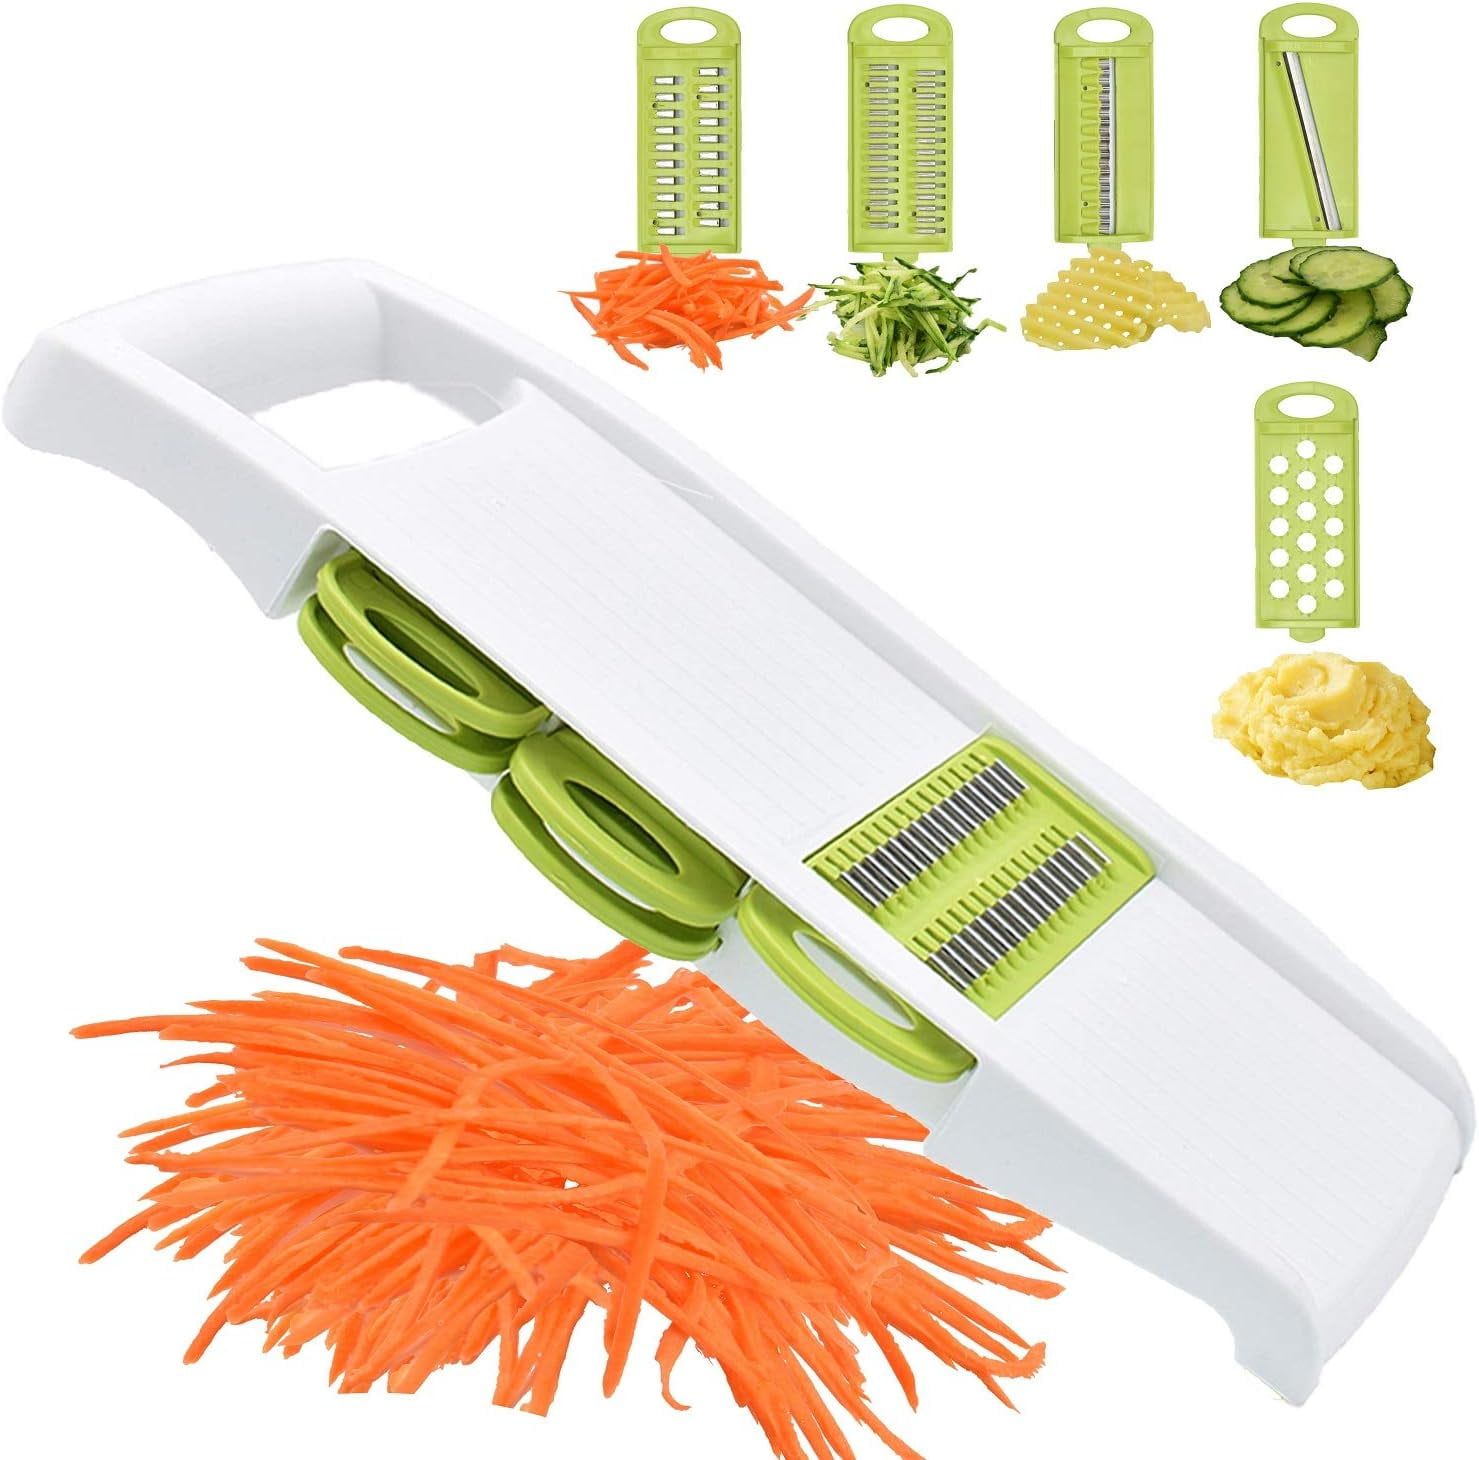 Mandoline Vegetable Slicer - 01-0006